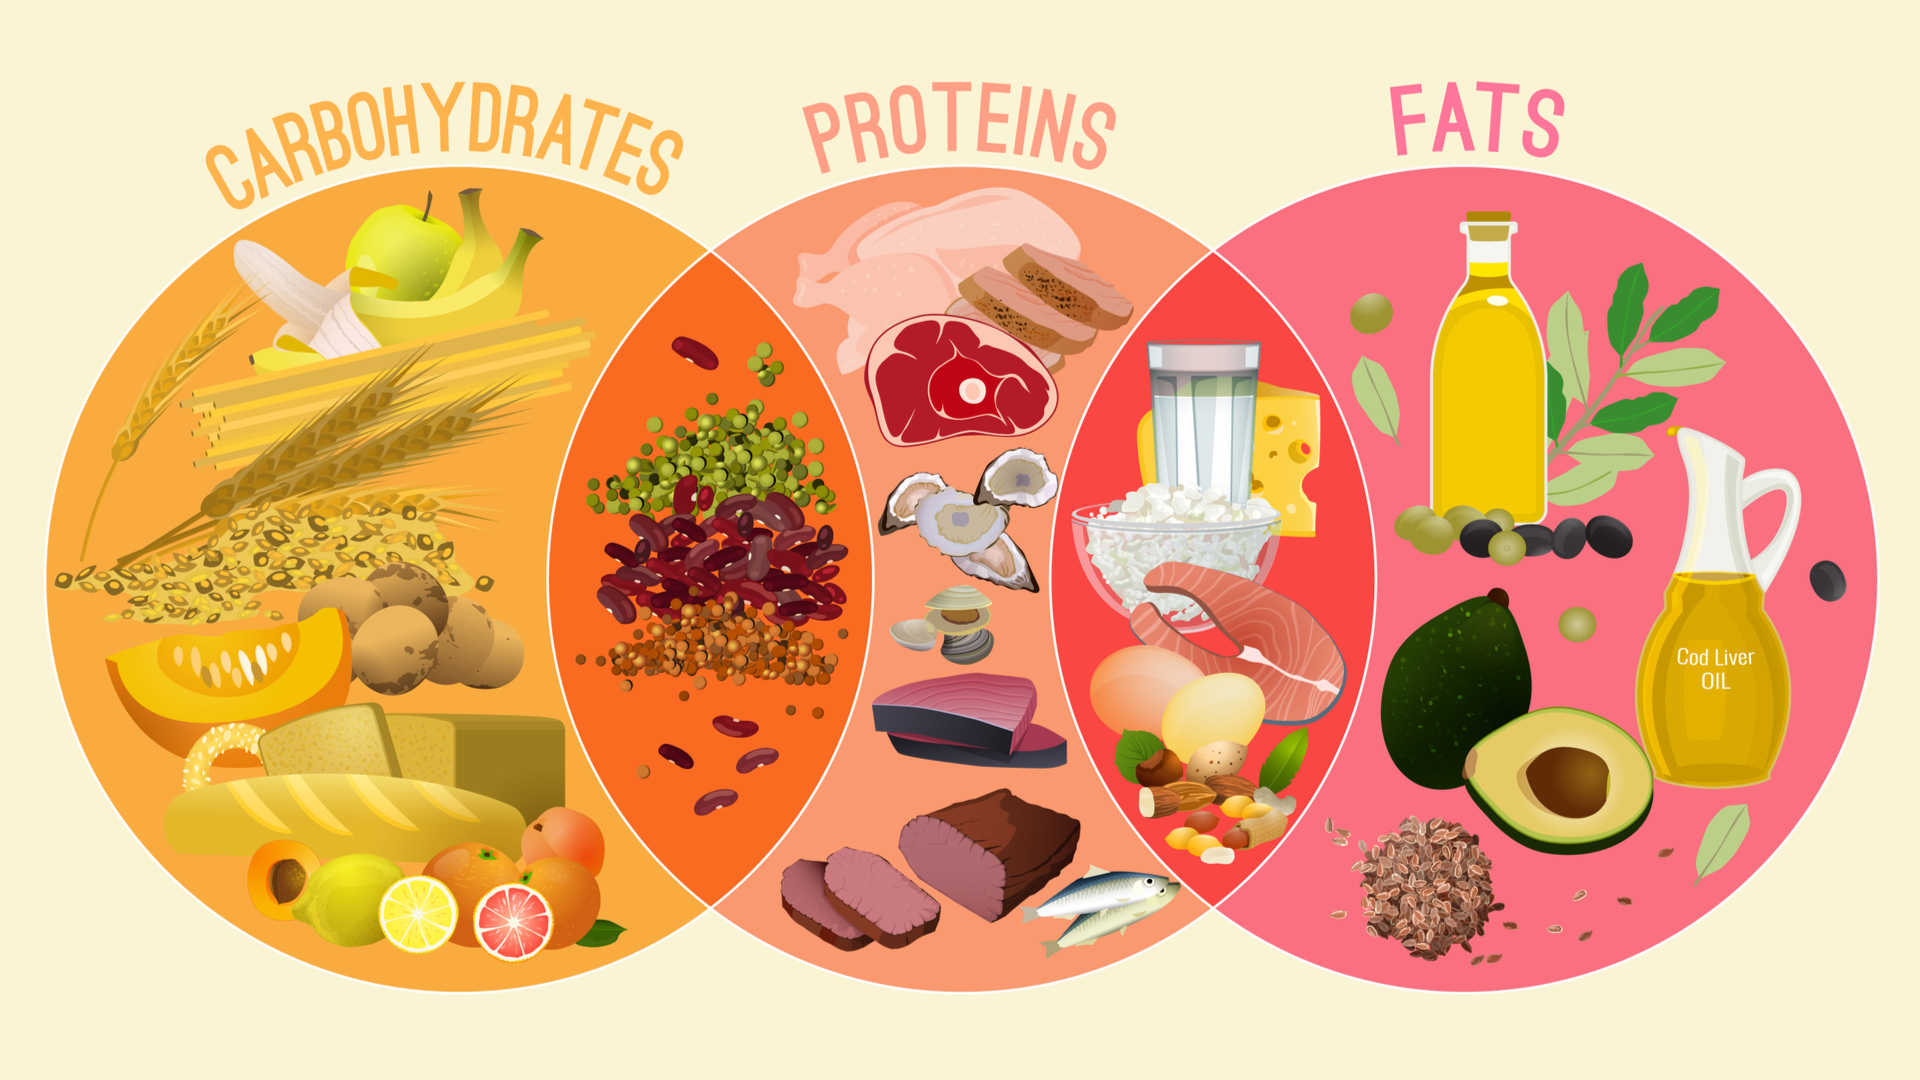 Carbohydrate là 1 trong 3 chất dinh dưỡng đa lượng bên cạnh protein và chất béo. 